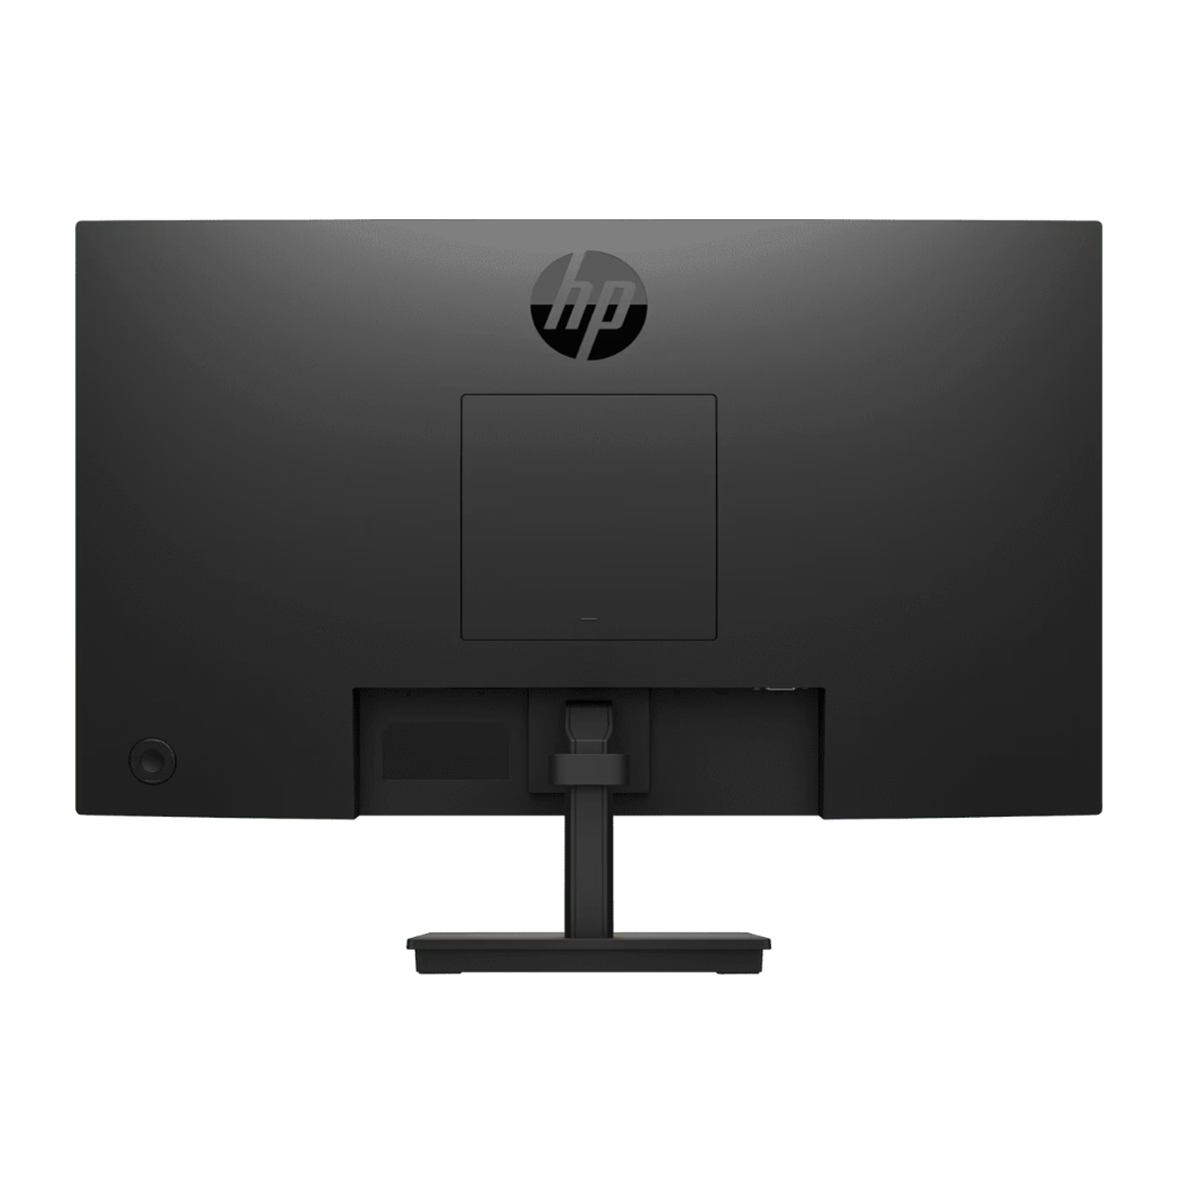 Màn hình HP V24i G5 (65P59AA) 24 inch FHD IPS